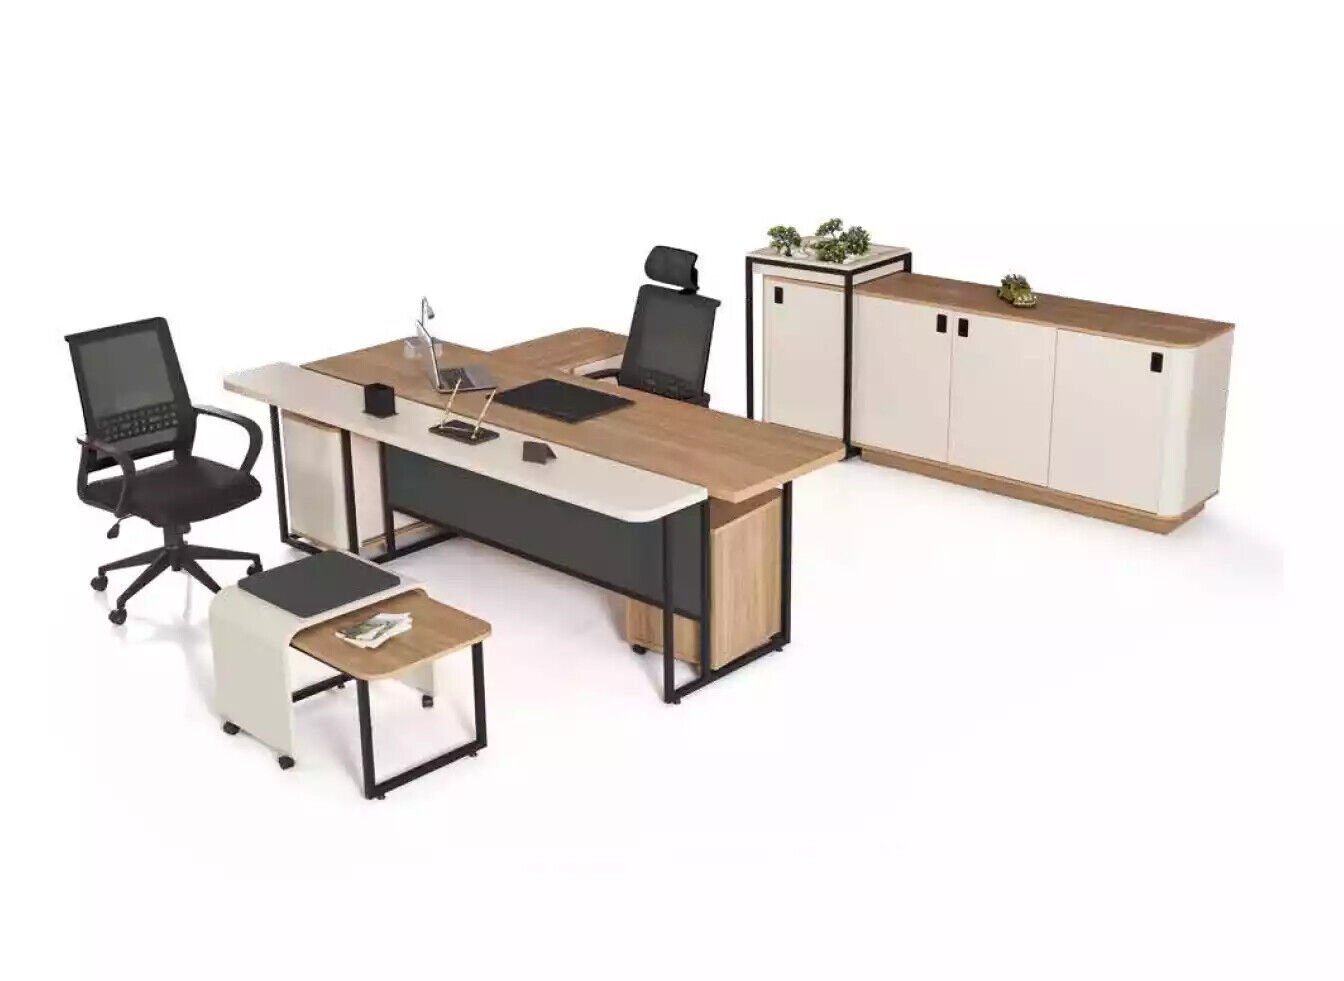 In Europe Büroschrank Eckschreibtisch Luxus, Büroausstattung Arbeitszimmer Made Beige Schreibtisch JVmoebel